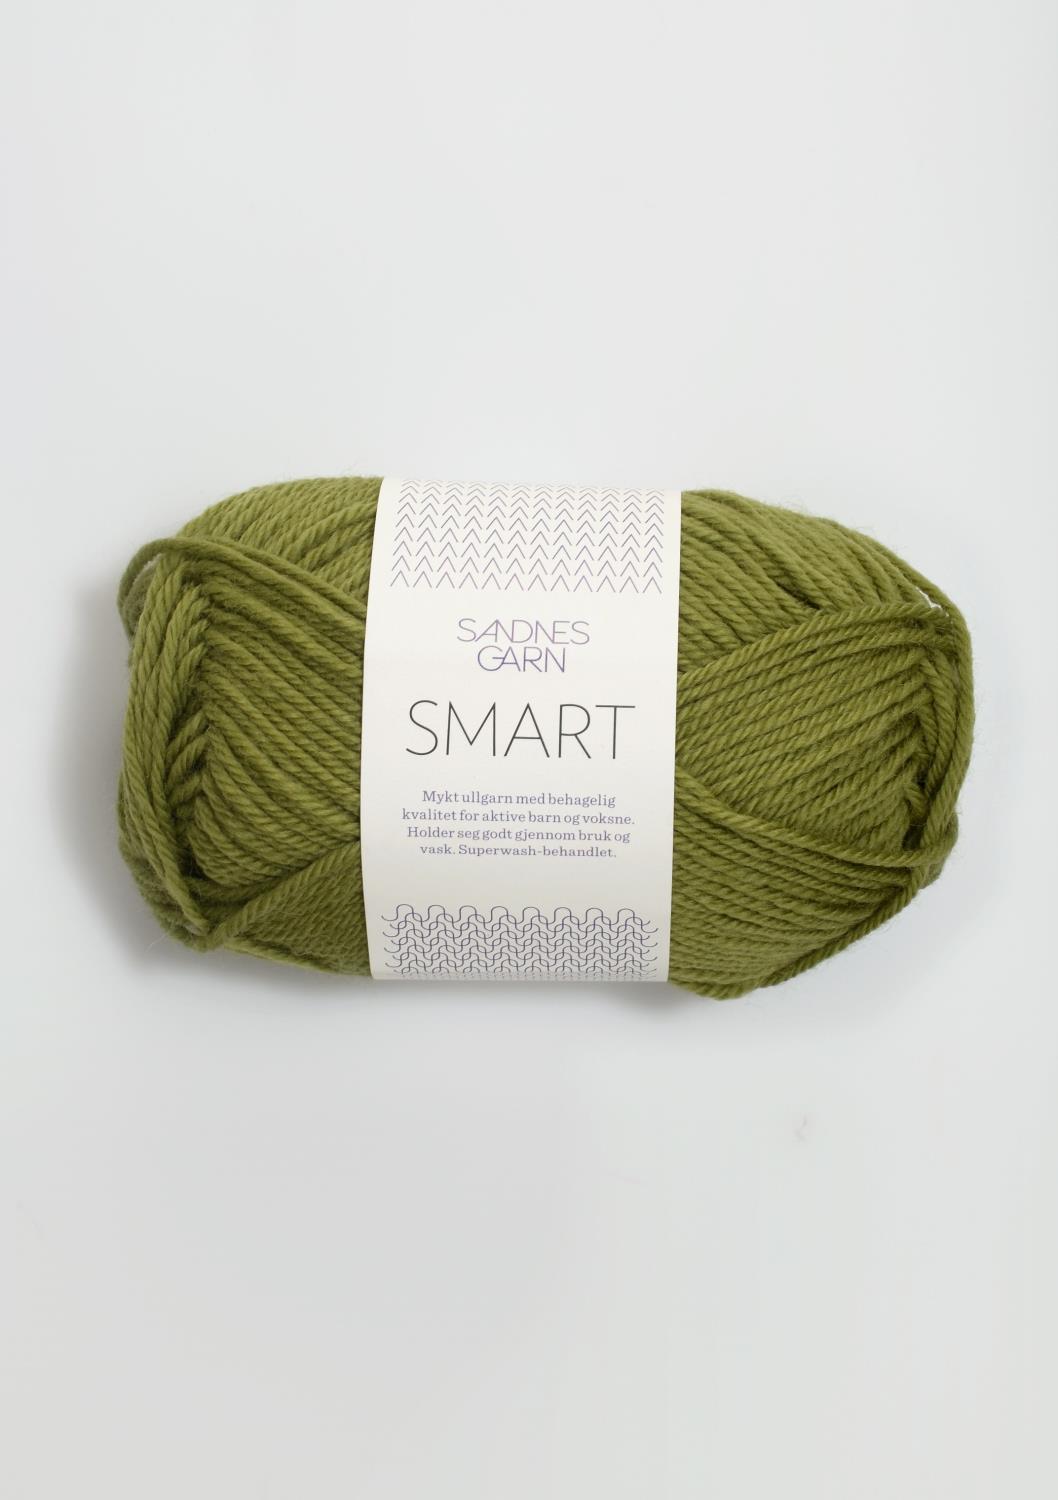 Smart Sandnes 9645 - Olivengrønn